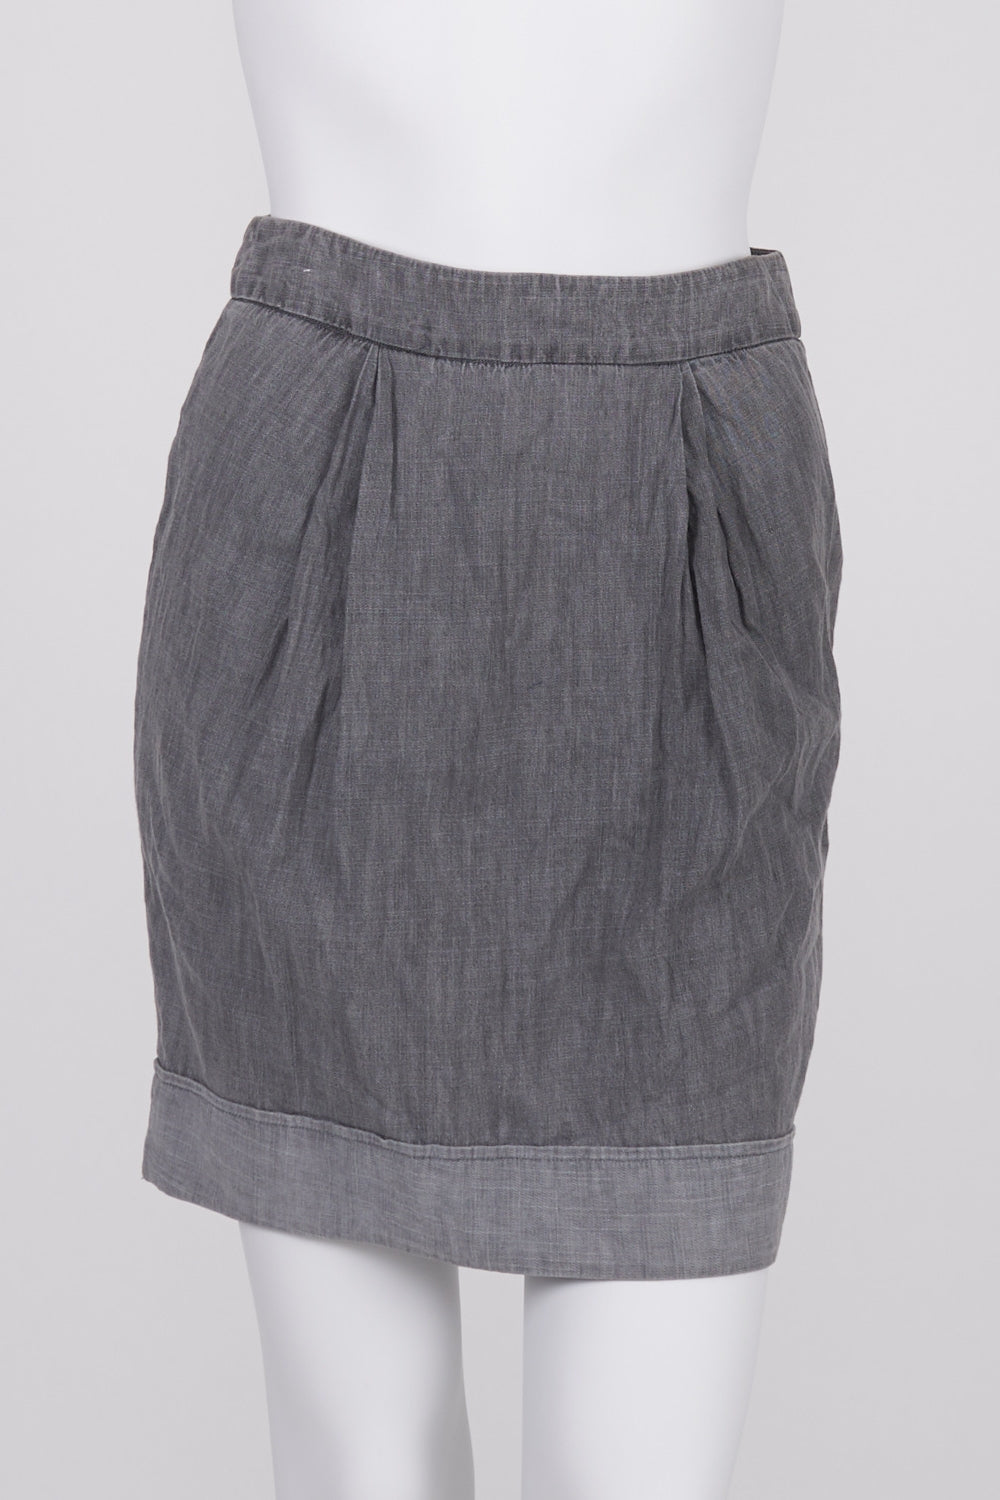 Witchery Grey Denim Skirt 6